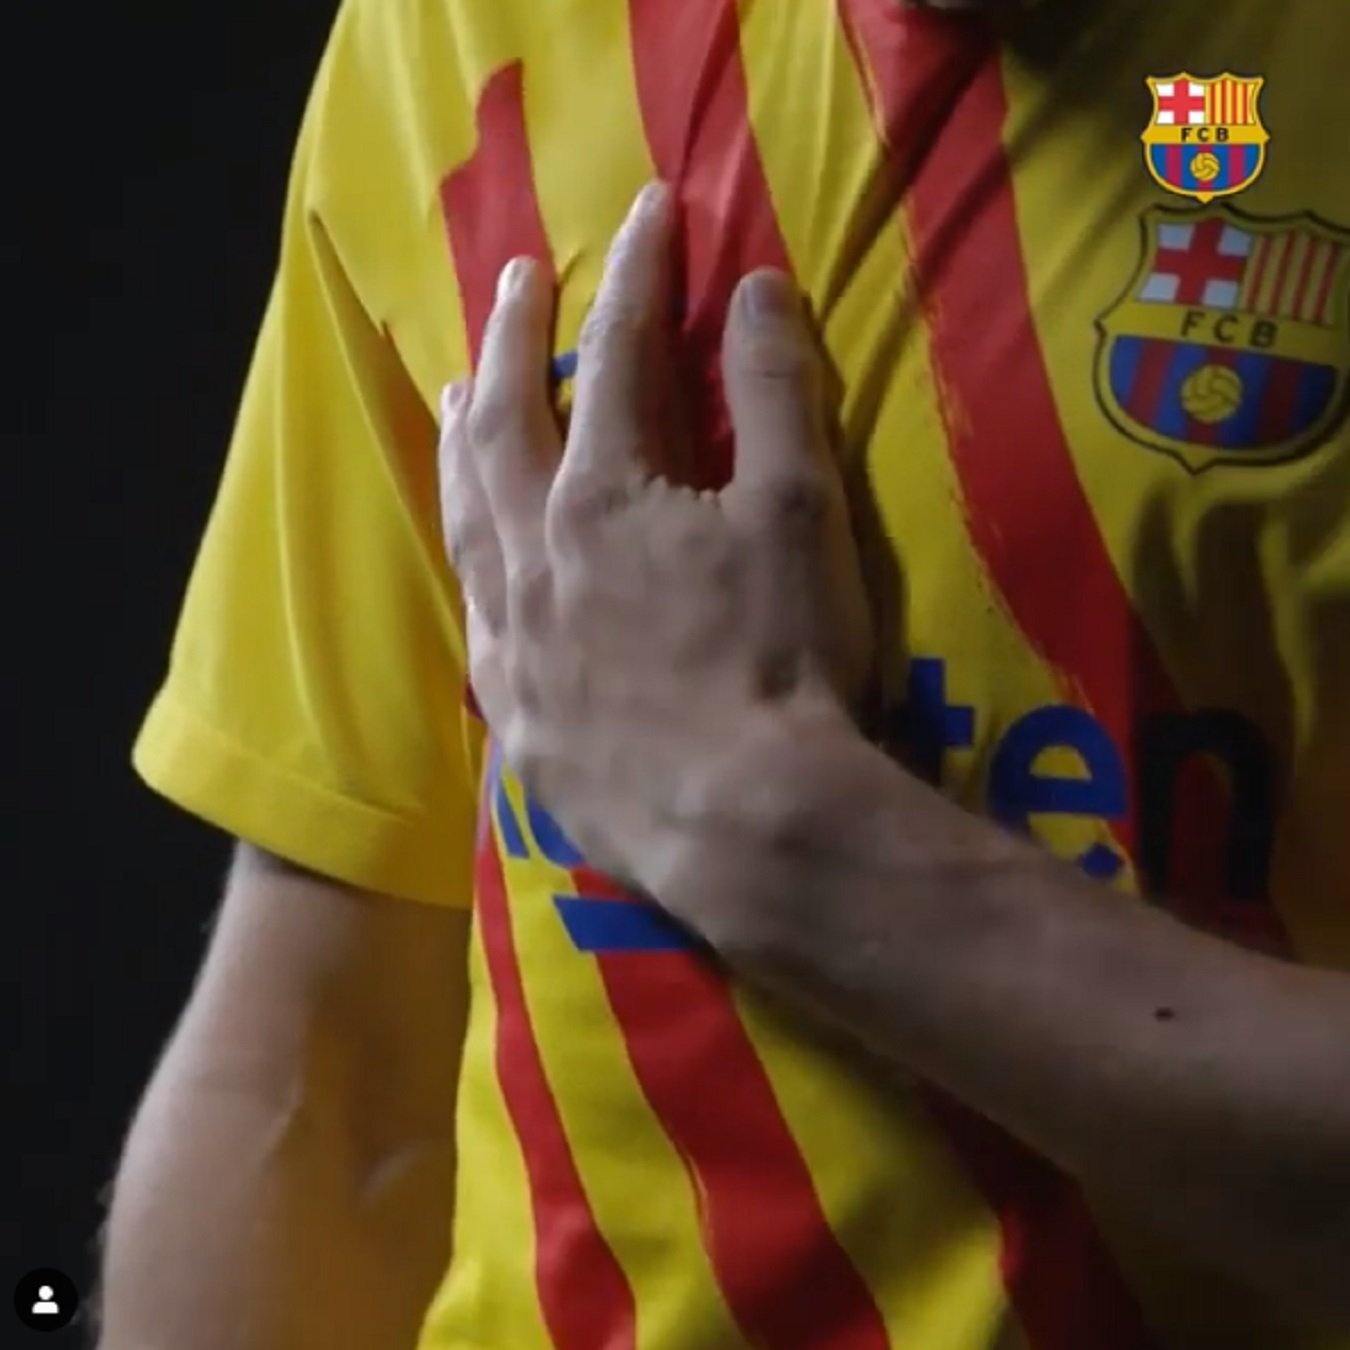 Un jugador del Barça hace suya la senyera y recibe odio: "Payaso separatista"